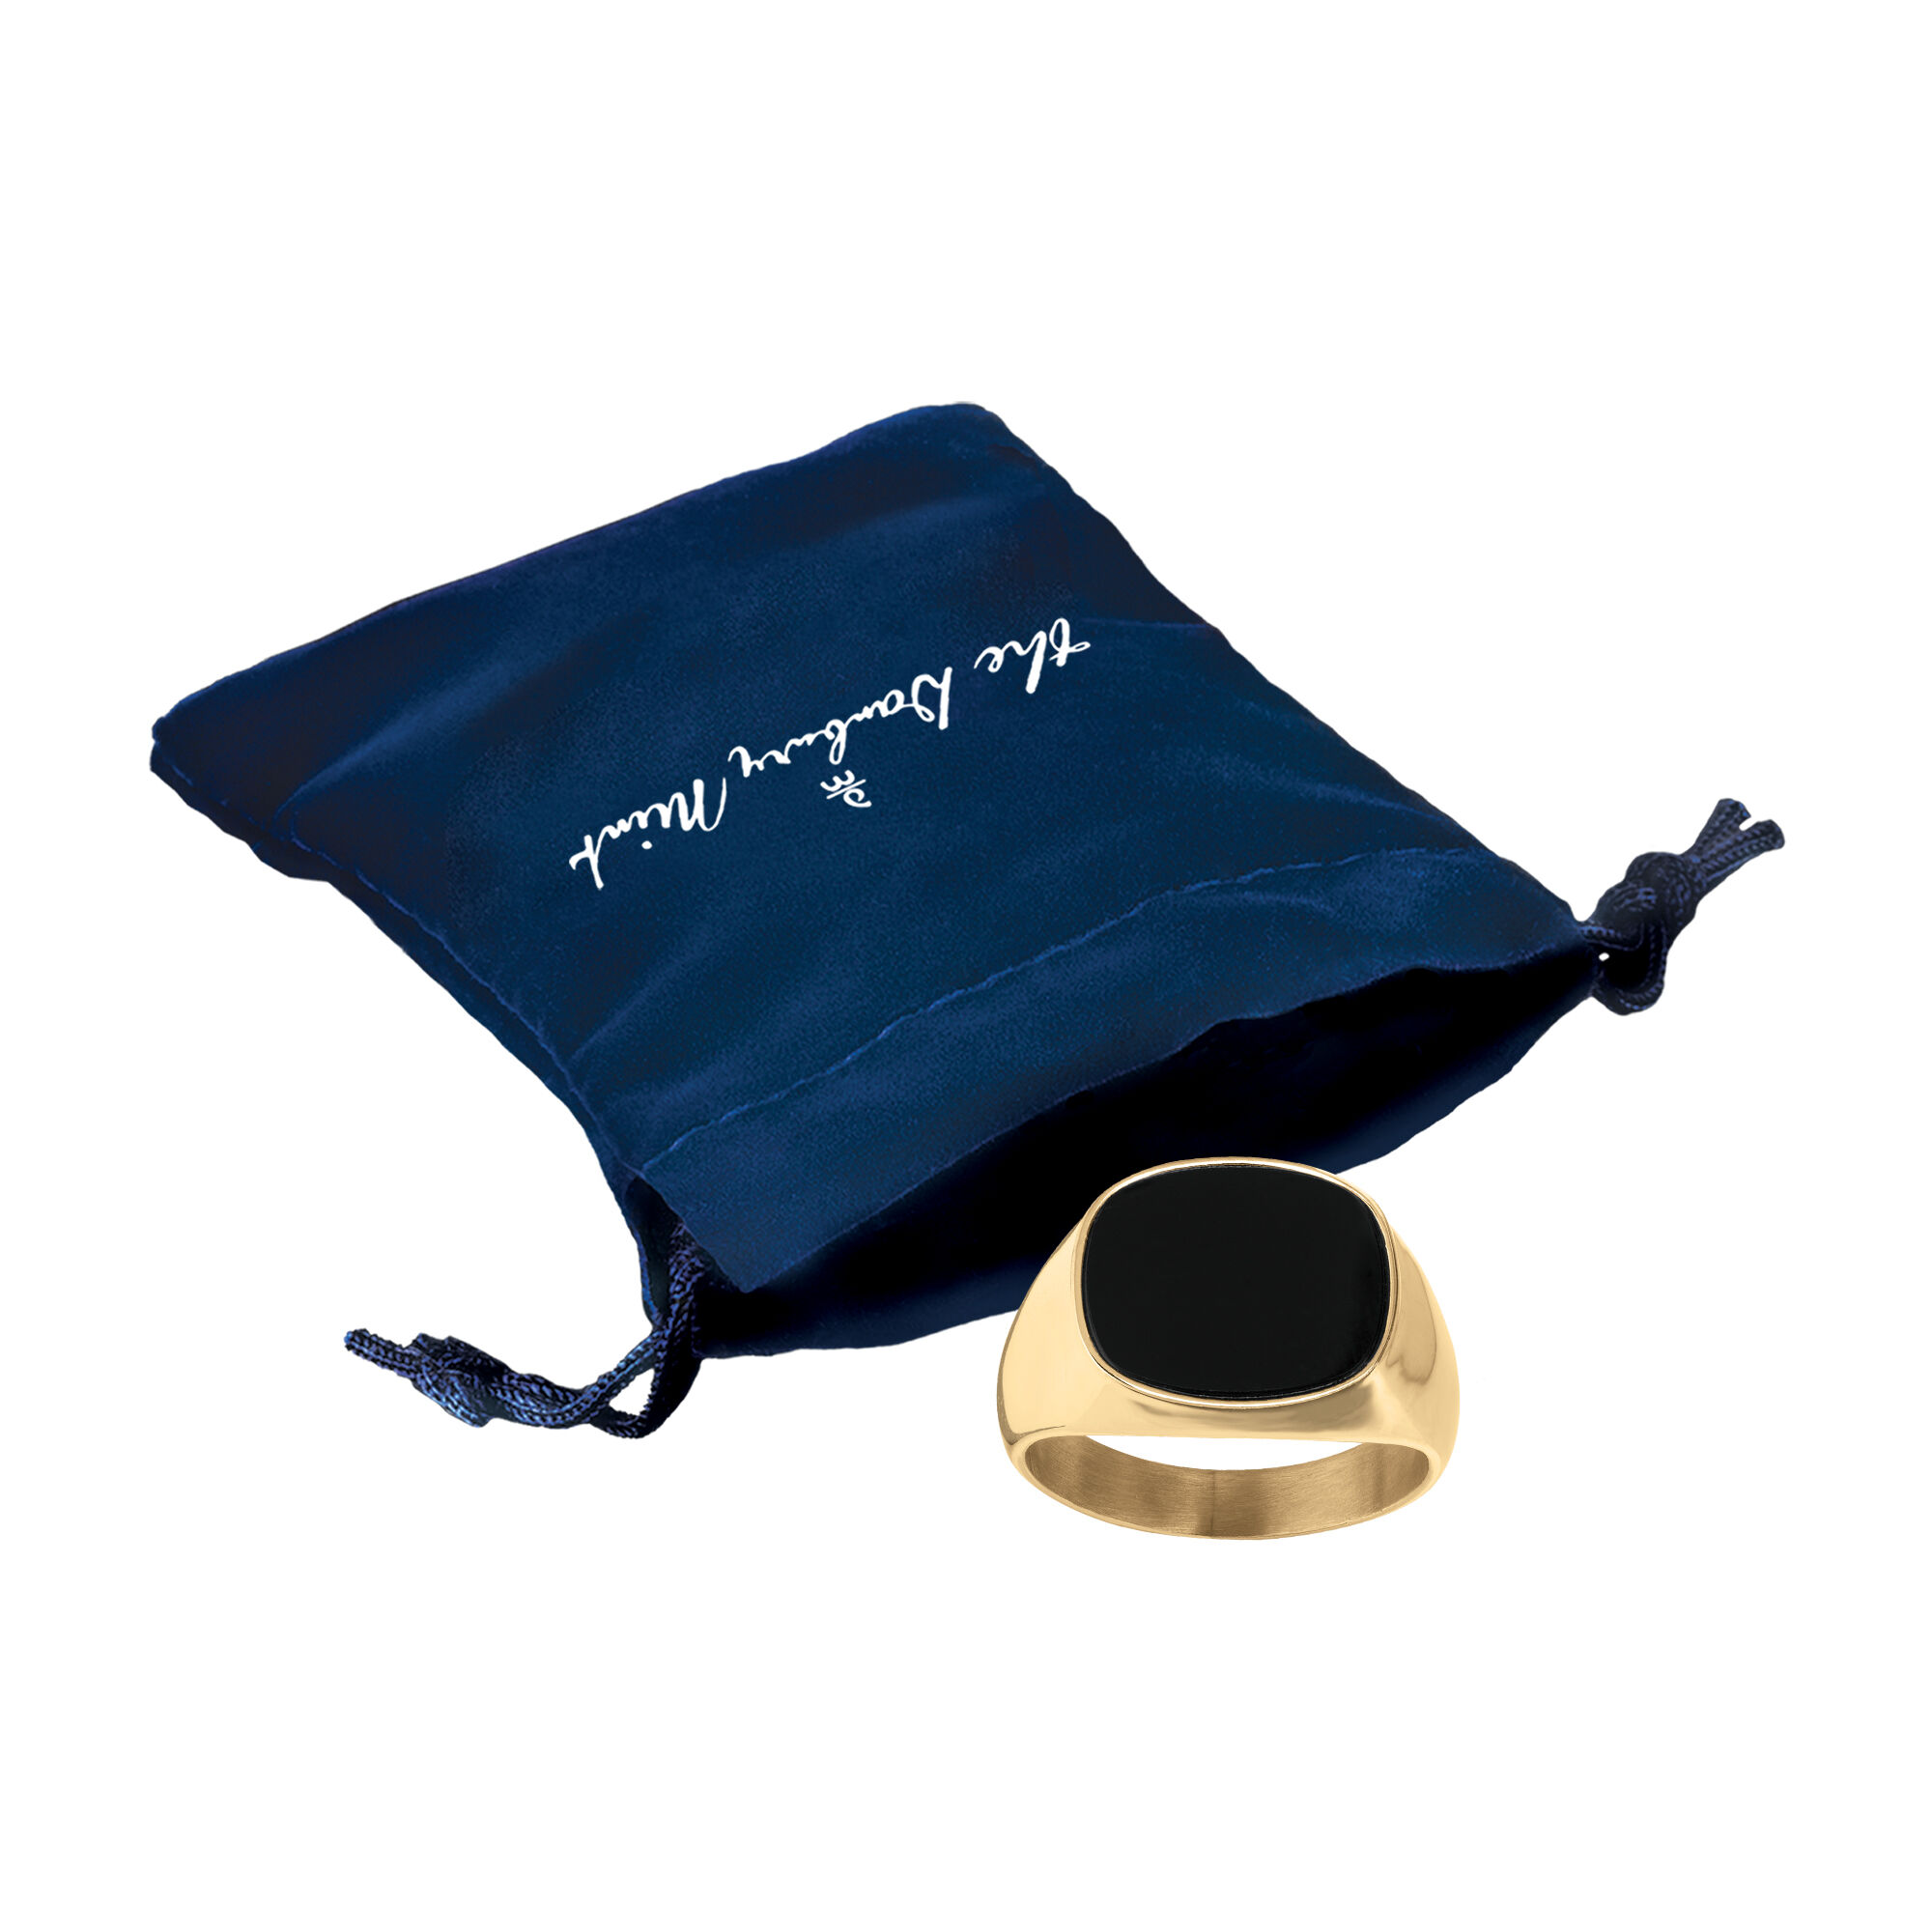 The Leonardo Ring 11125 0015 g gift pouch